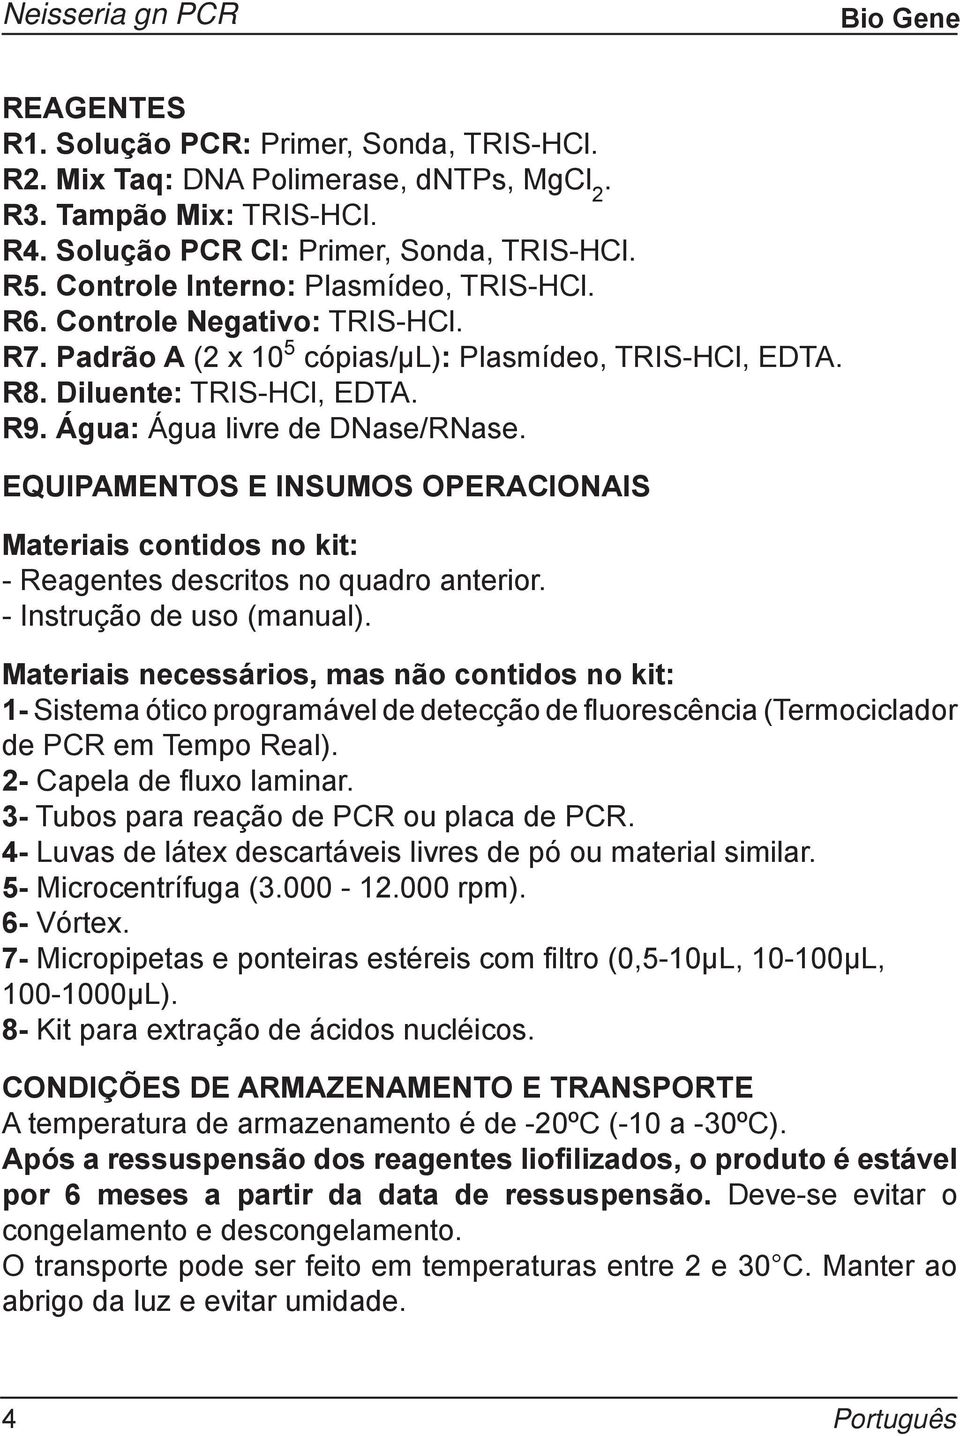 EQUIPAMENTOS E INSUMOS OPERACIONAIS Materiais contidos no kit: - Reagentes descritos no quadro anterior. - Instrução de uso (manual).